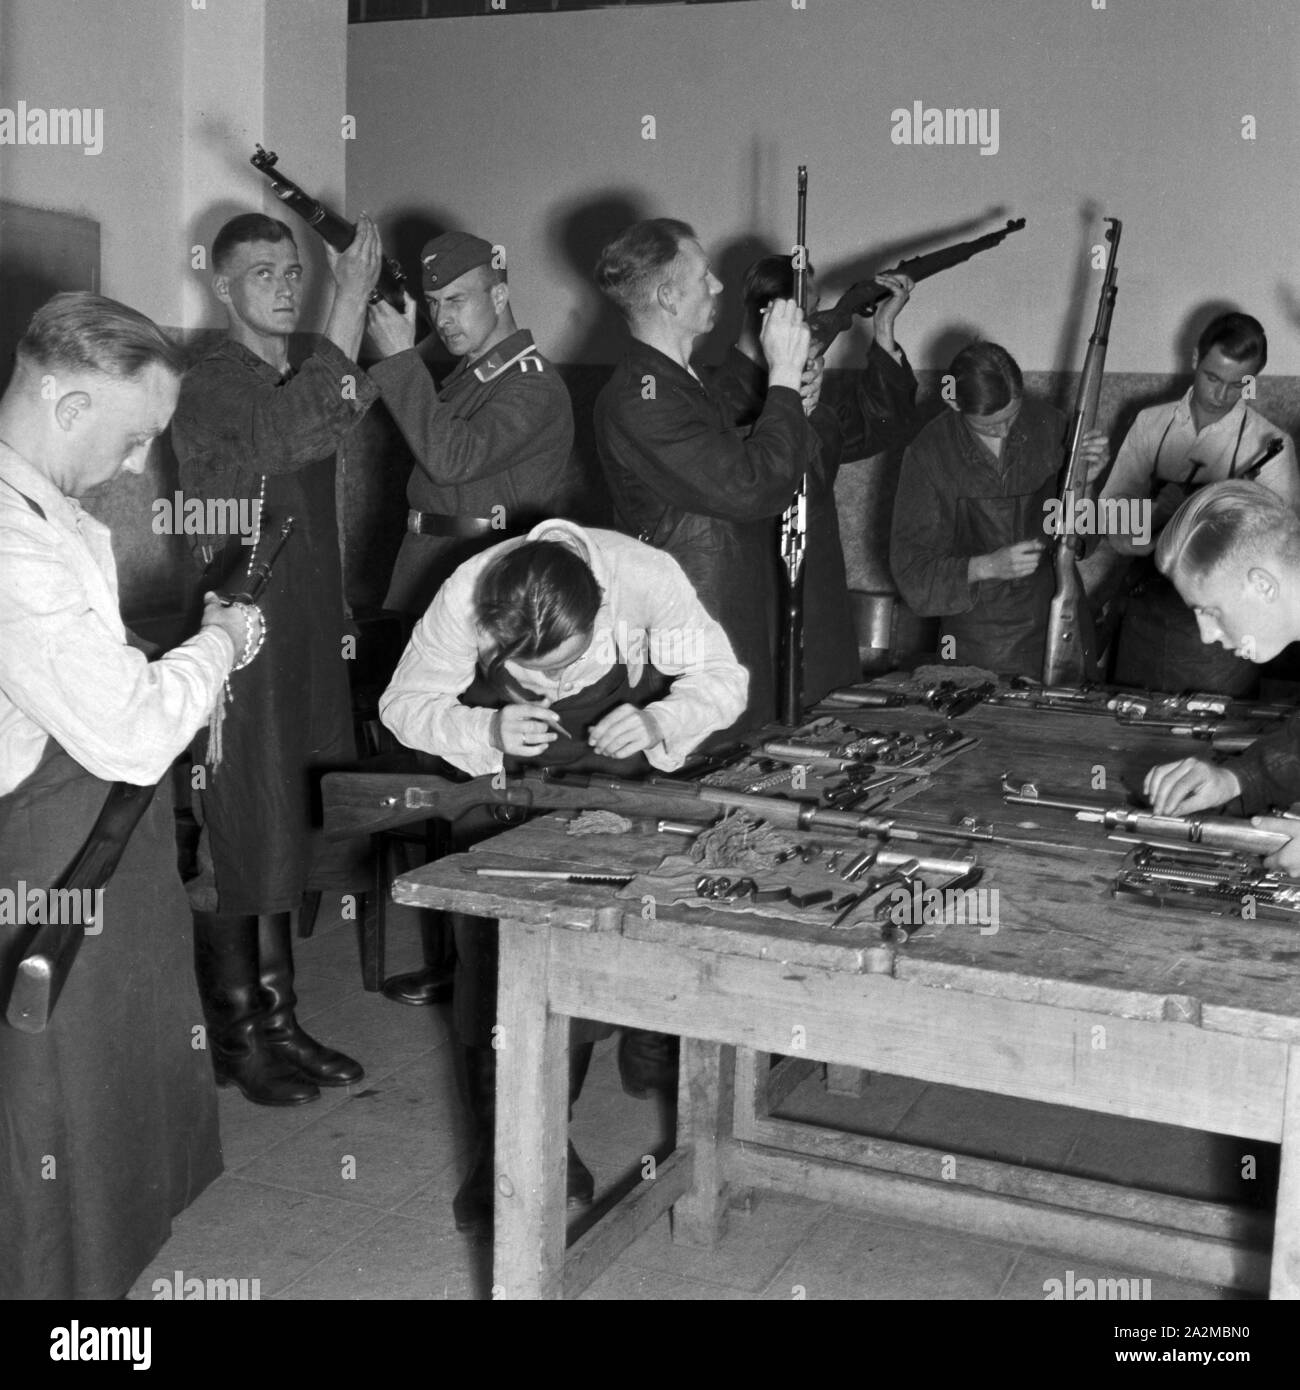 Original-Bildunterschrift: Dienst des Soldaten: Waffenreinigen, Deutschland 1940er Jahre. Soldier's duty: cleaning the weapons, Germany 1940s. Stock Photo